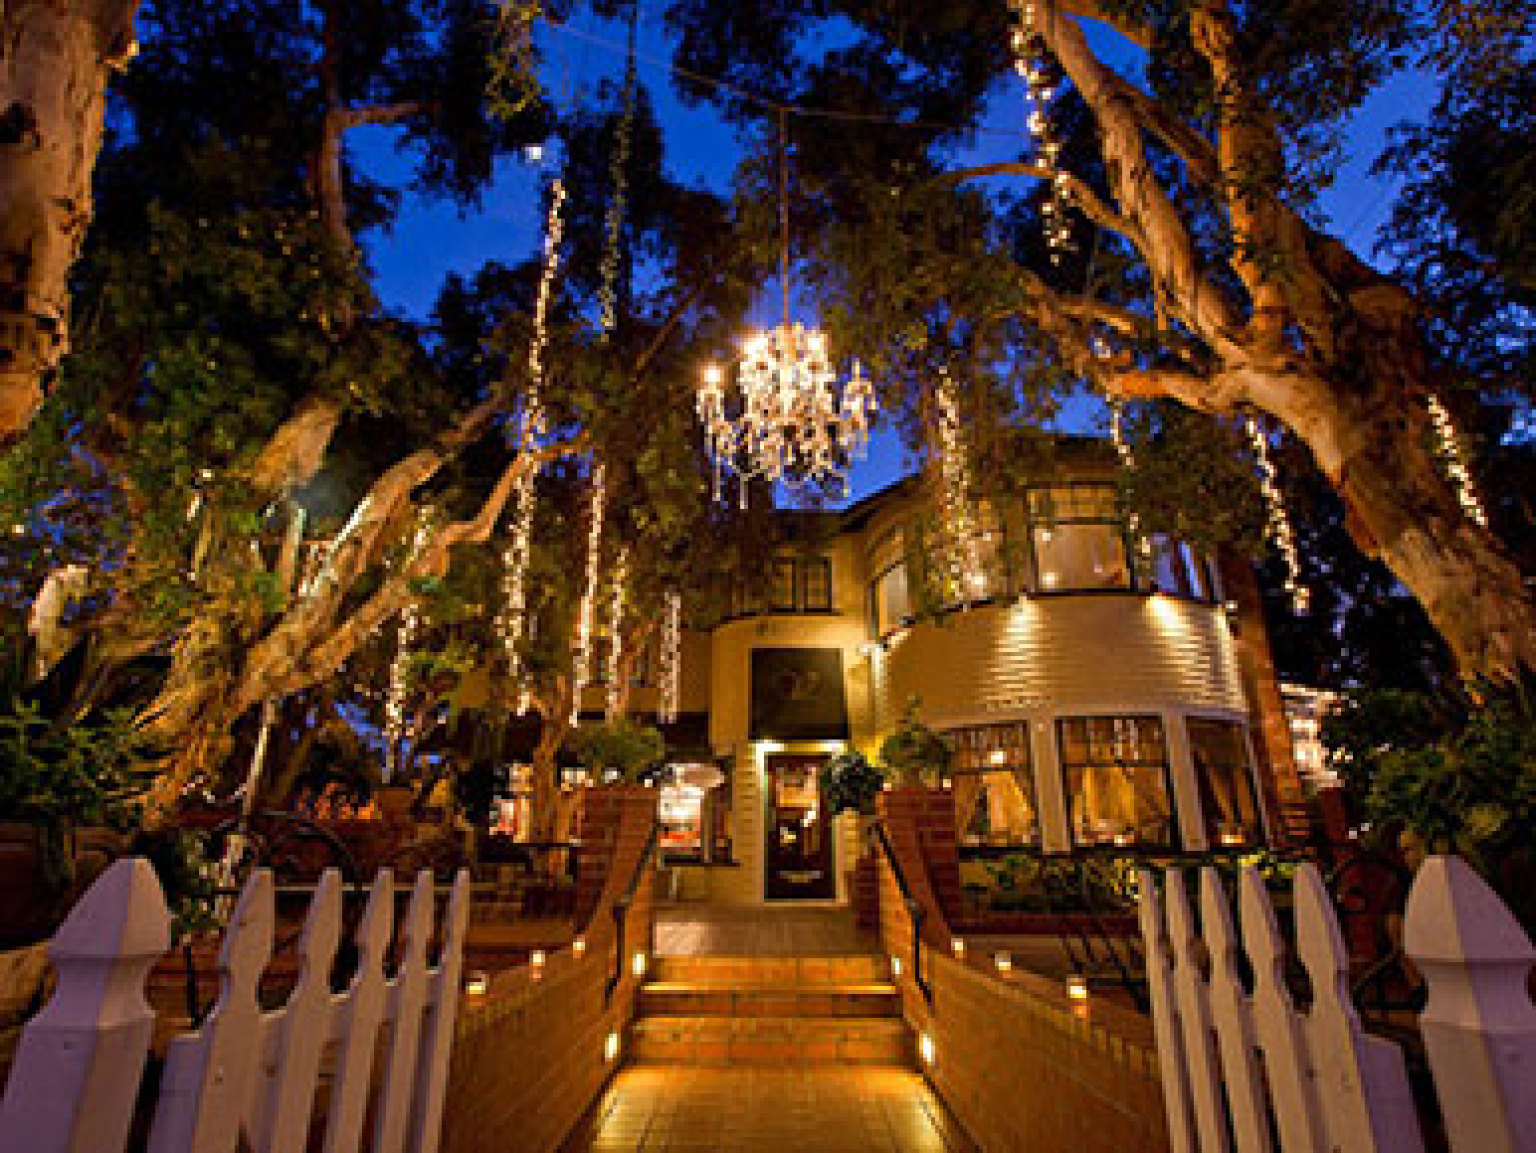 LA Wedding Venues: Best Restaurants, Museums & Gardens ...